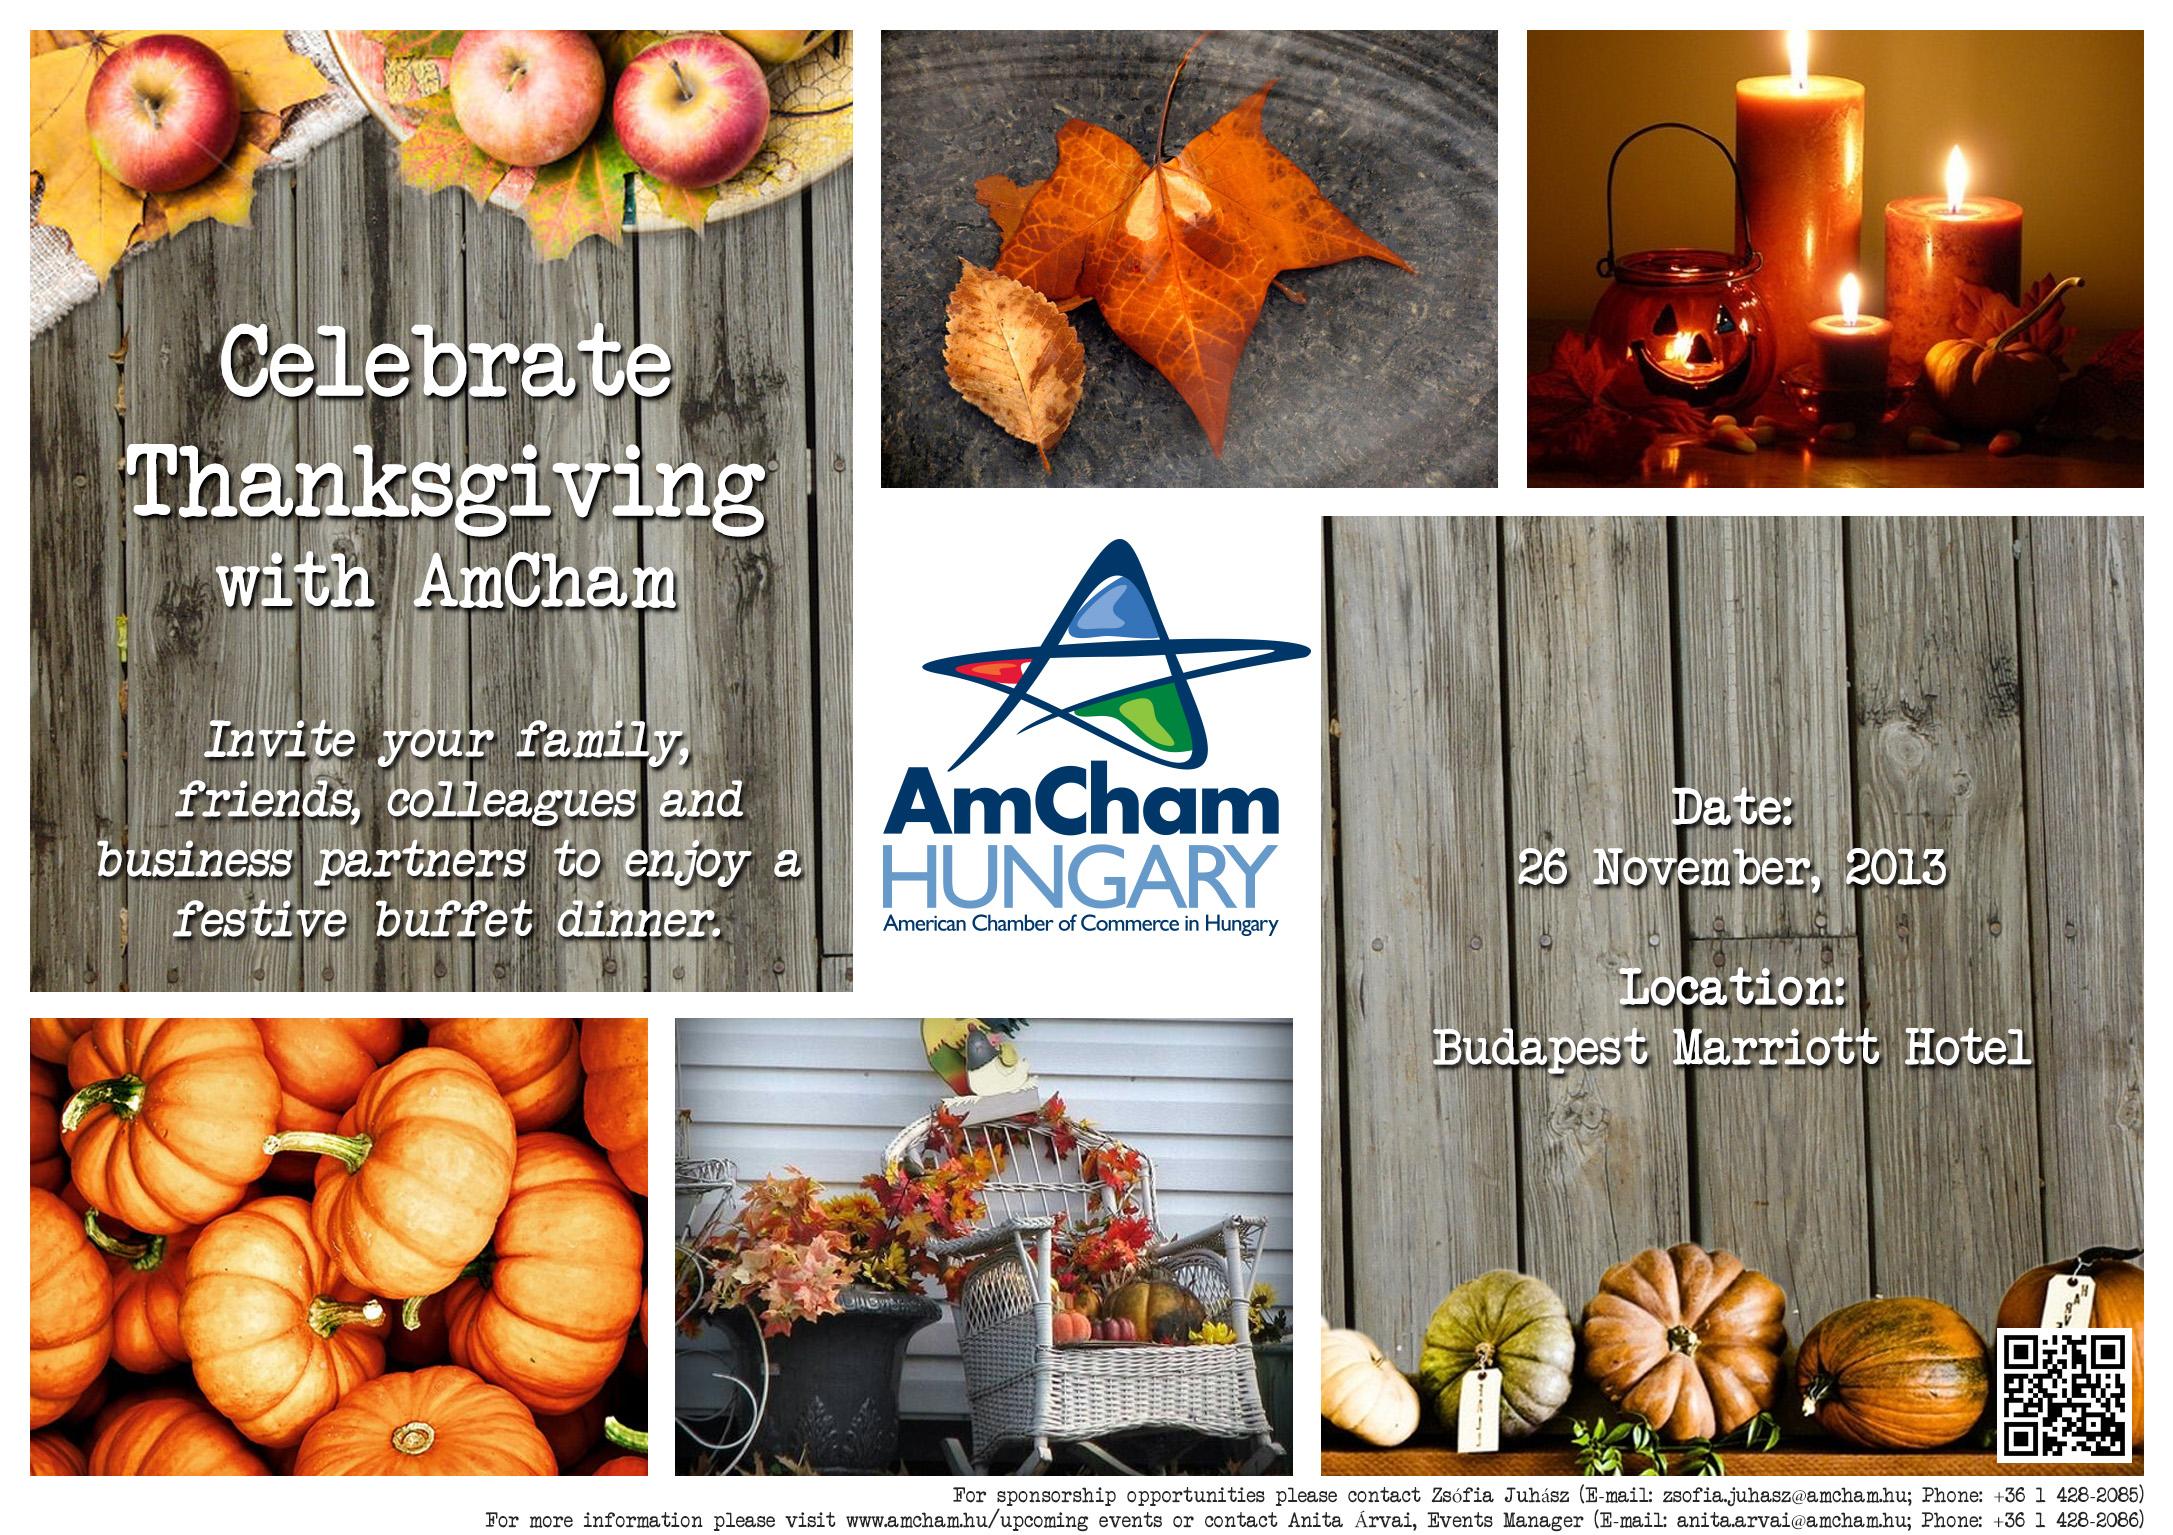 Invitation: AmCham Annual Family Thanksgiving Dinner, Budapest,  26 November